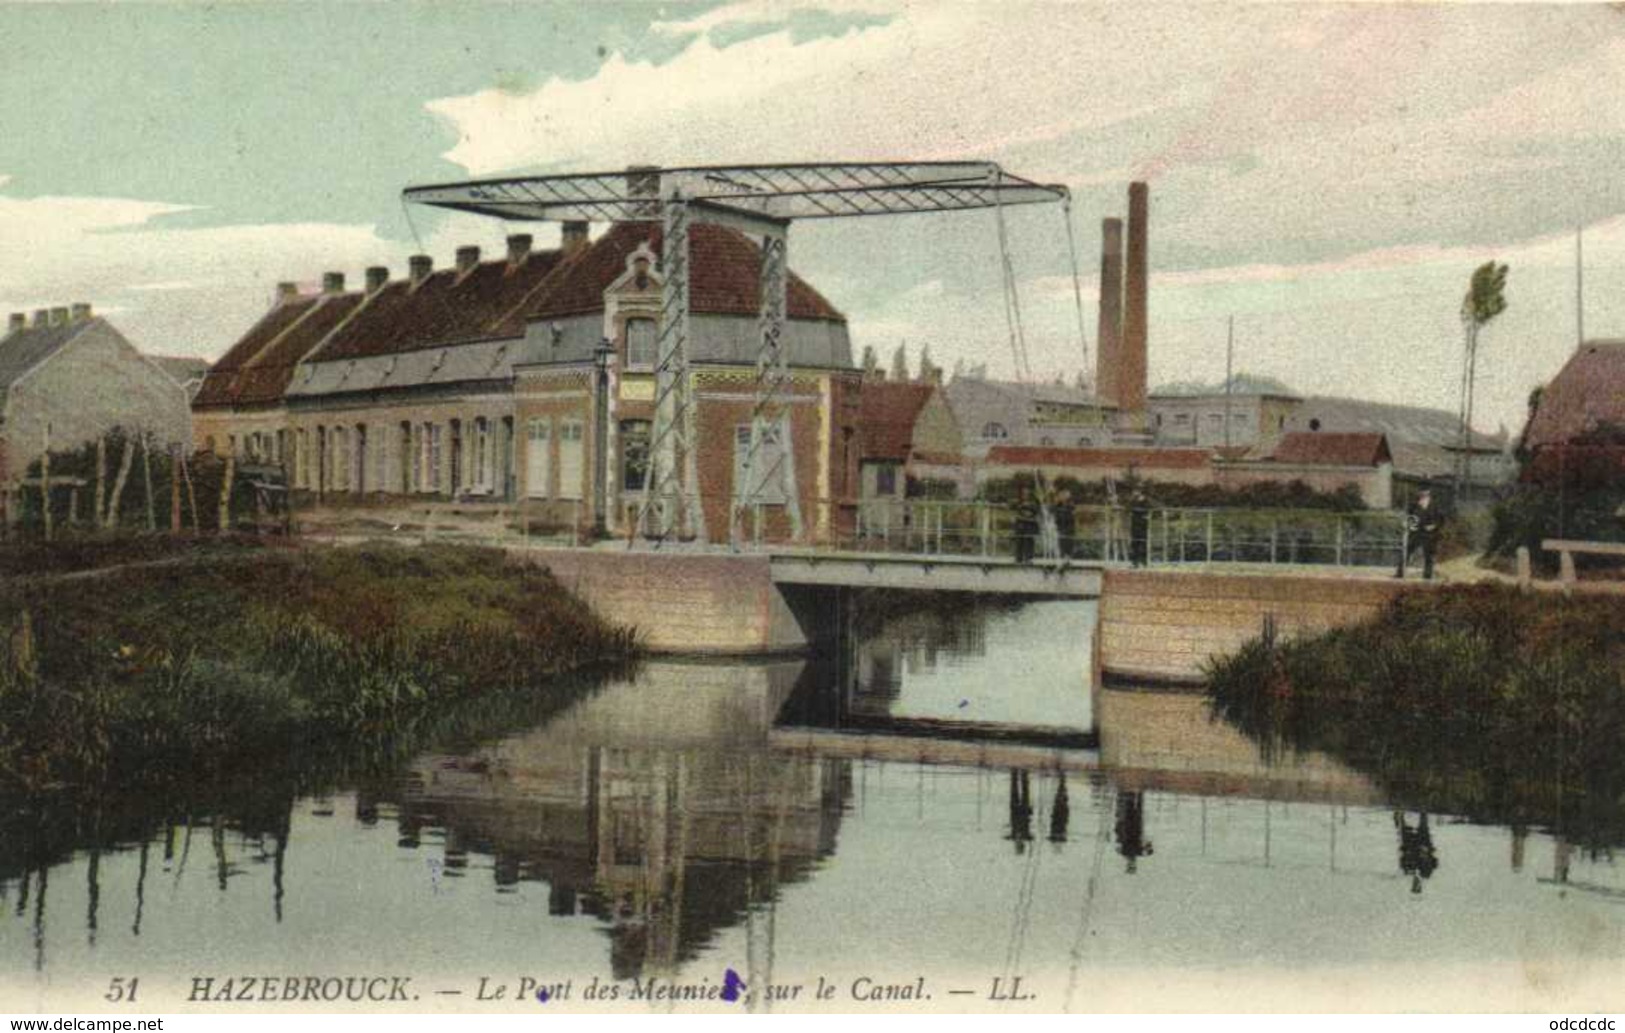 HAZEBROUCK  Le Pont Des Meuniers Dur Le Canal Collorisée RV - Hazebrouck